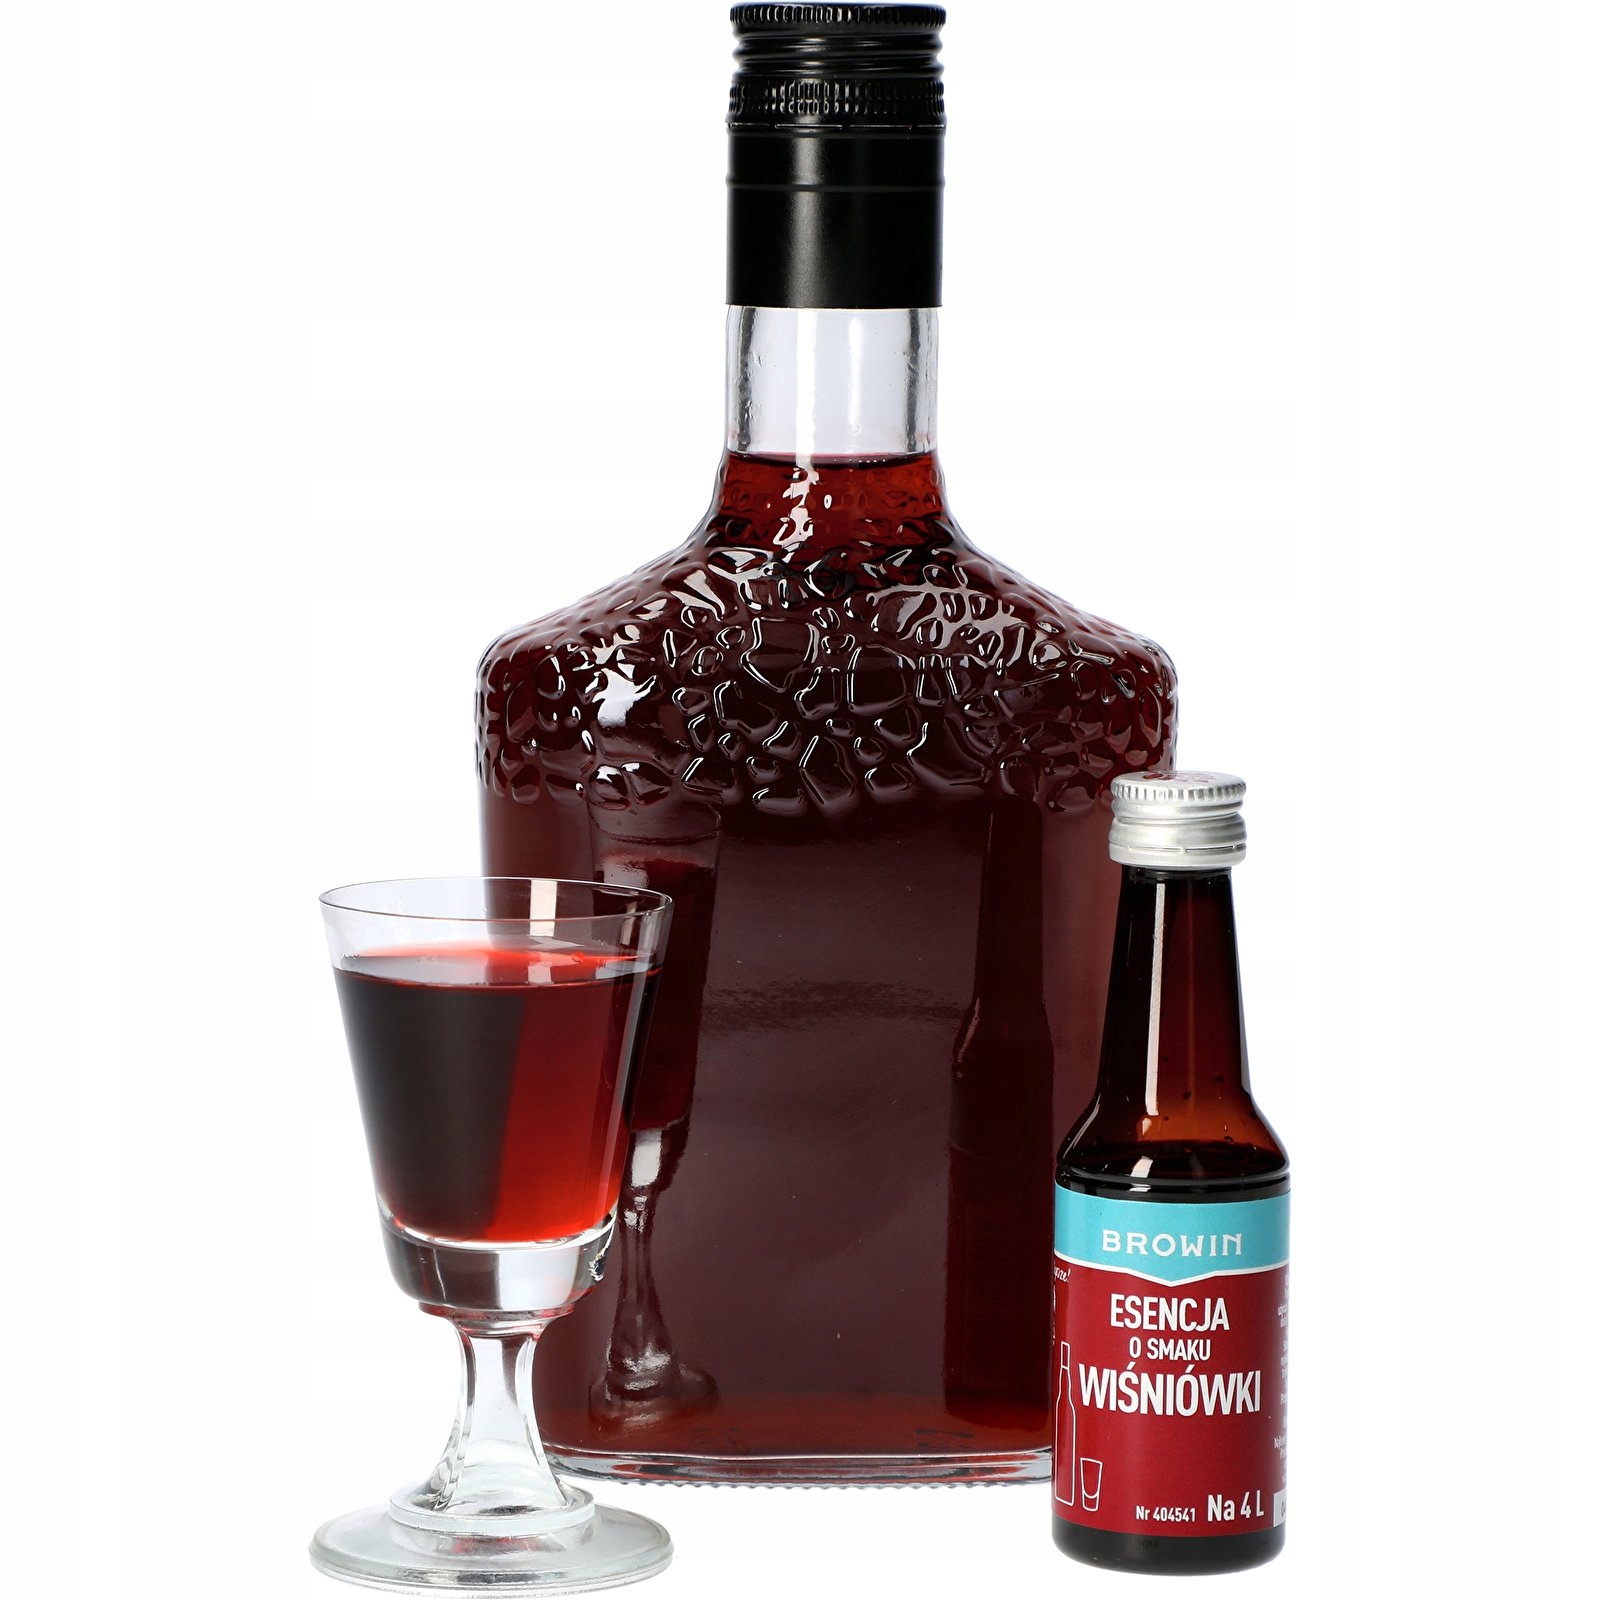  есенція ароматизатор вишневий лікер для 4л BROWIN торгова назва есенція зі смаком вишні для 4 л - 40 мл